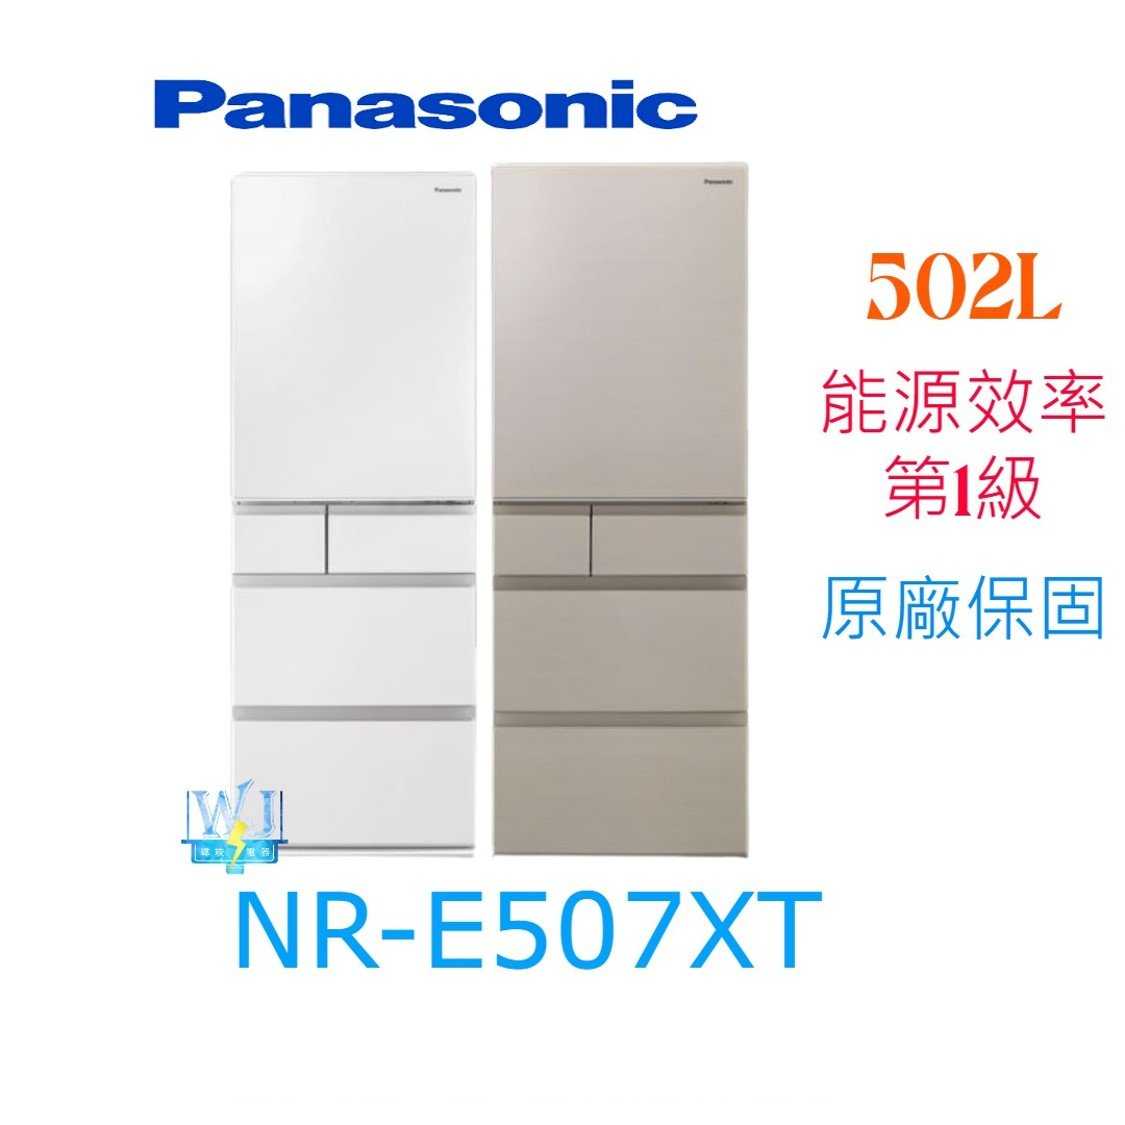 【暐竣電器】Panasonic國際牌 NR-E507XT 日本製 五門電冰箱 NRE507XT 窄版變頻冰箱